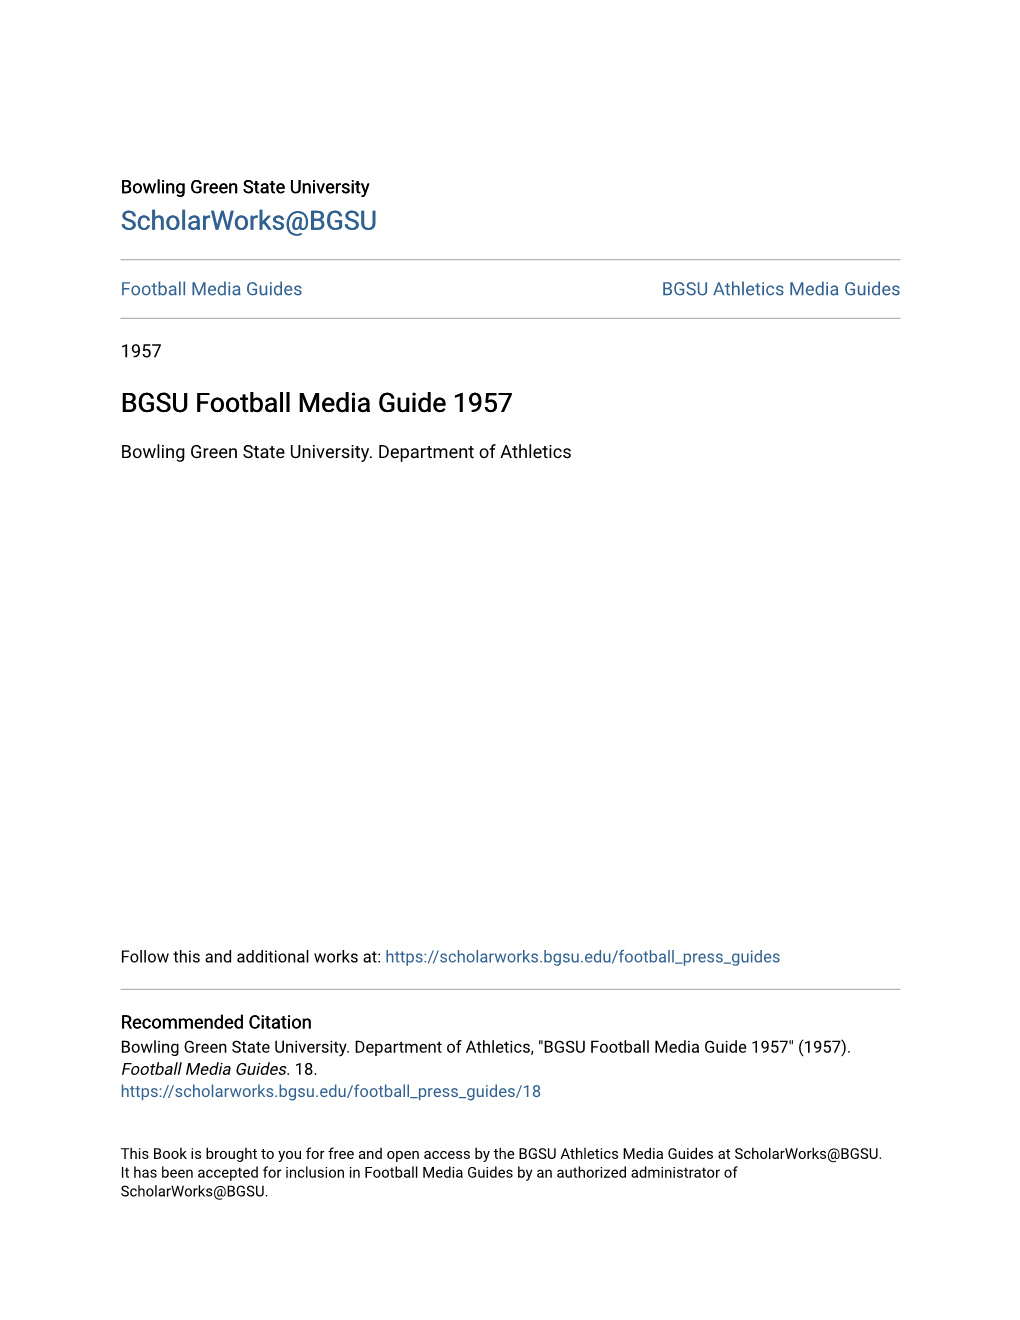 BGSU Football Media Guide 1957